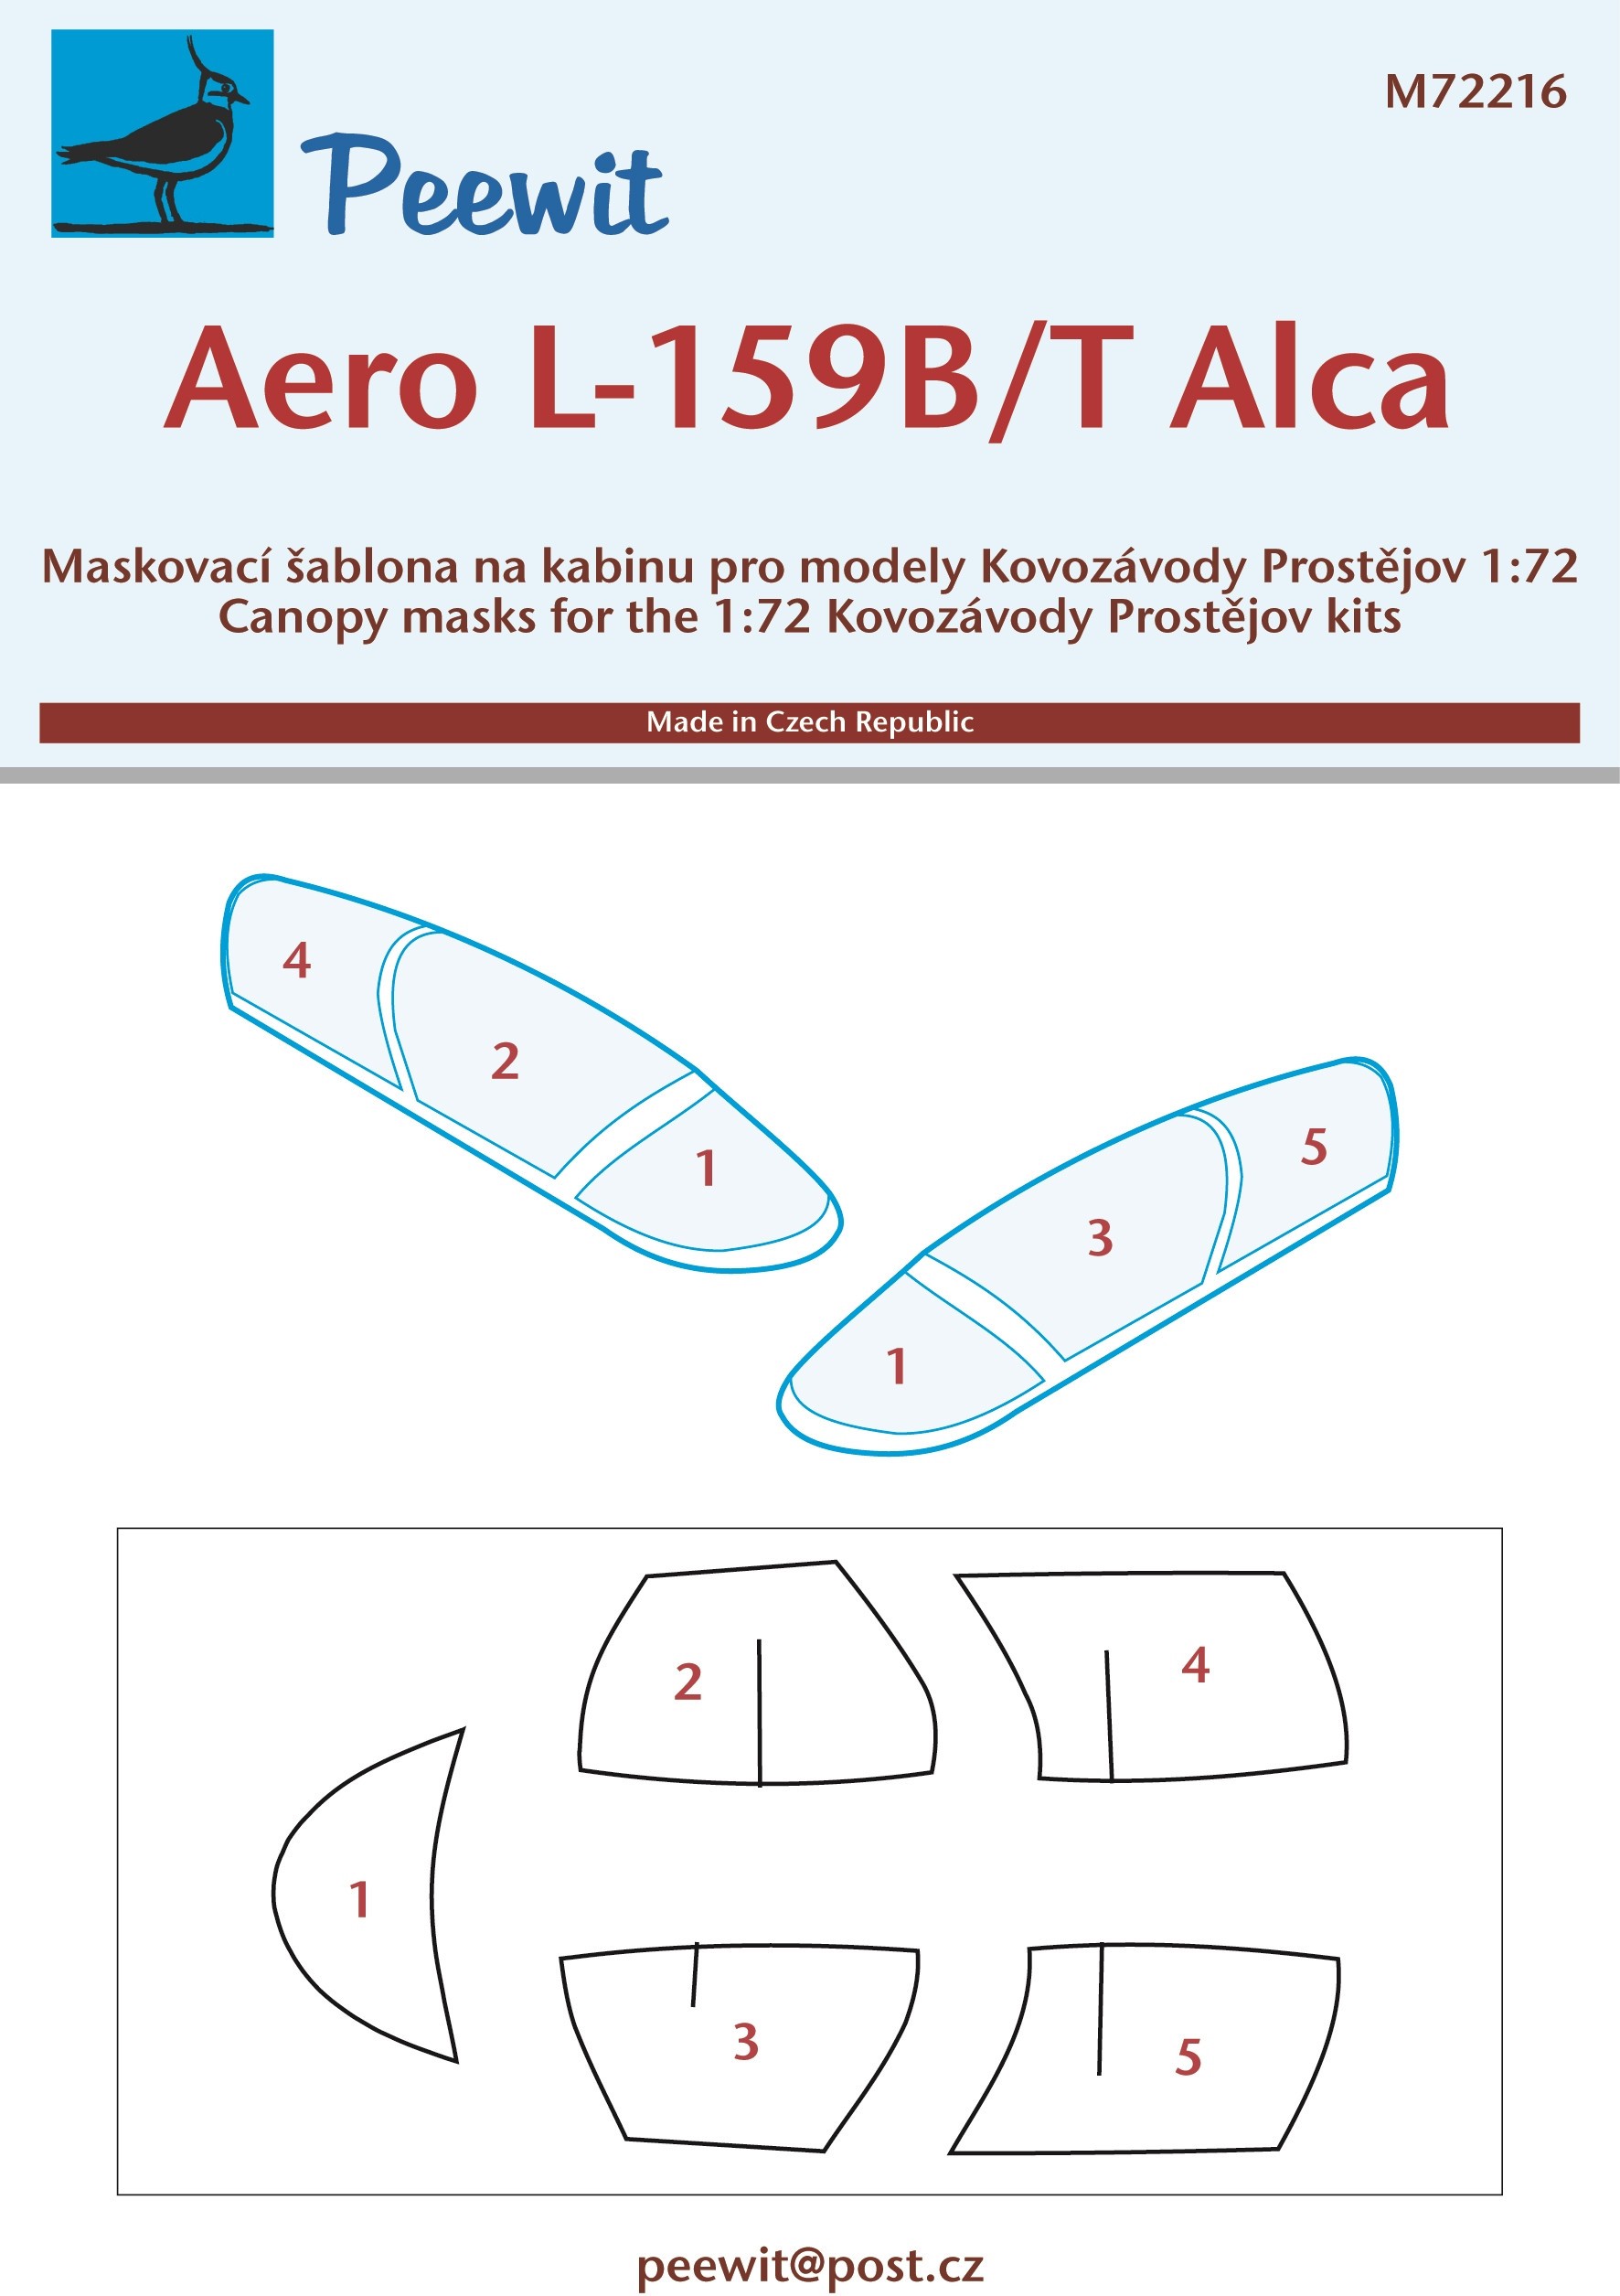  Peewit Aero L-159B / L-159T Alca (conçu pour être utilisé avec les ki